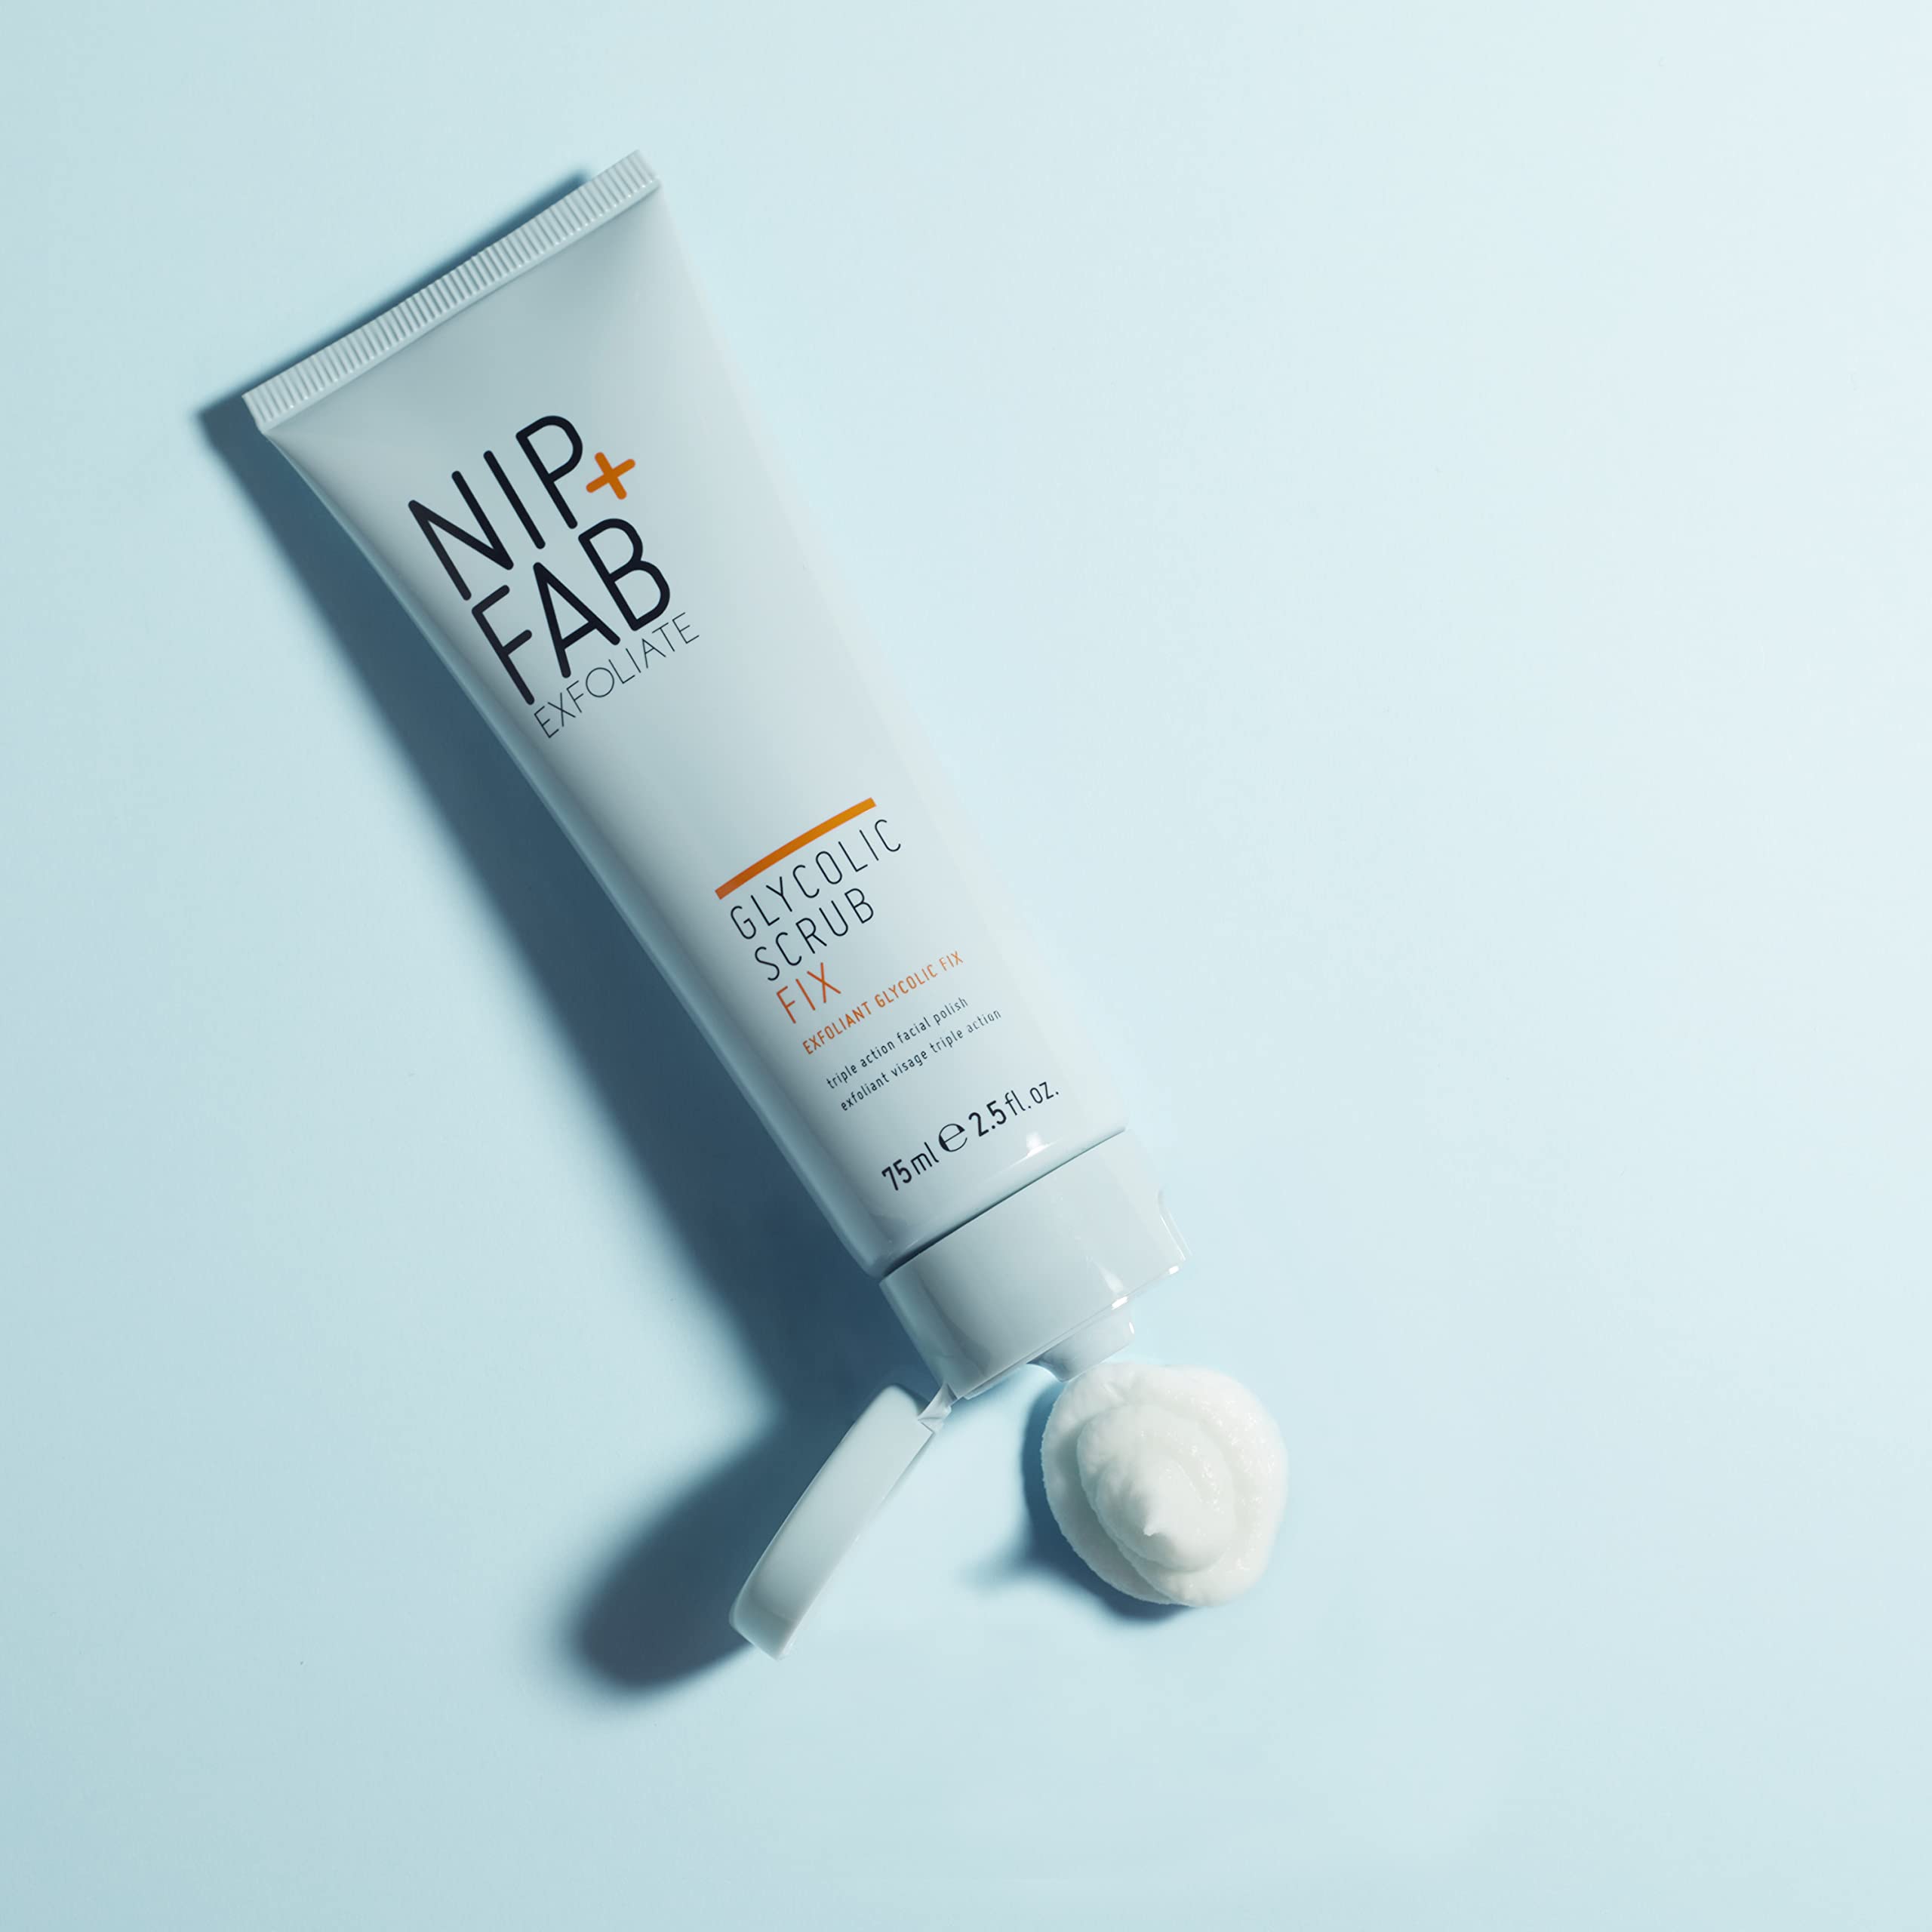 Nip + Fab Glycolic Acid Fix Face Scrub with Salicylic Acid, AHA/BHA Exfoliating Facial Cleanser Polish for Refining Pores Skin Brightening, 75 ml 2.5 fl oz